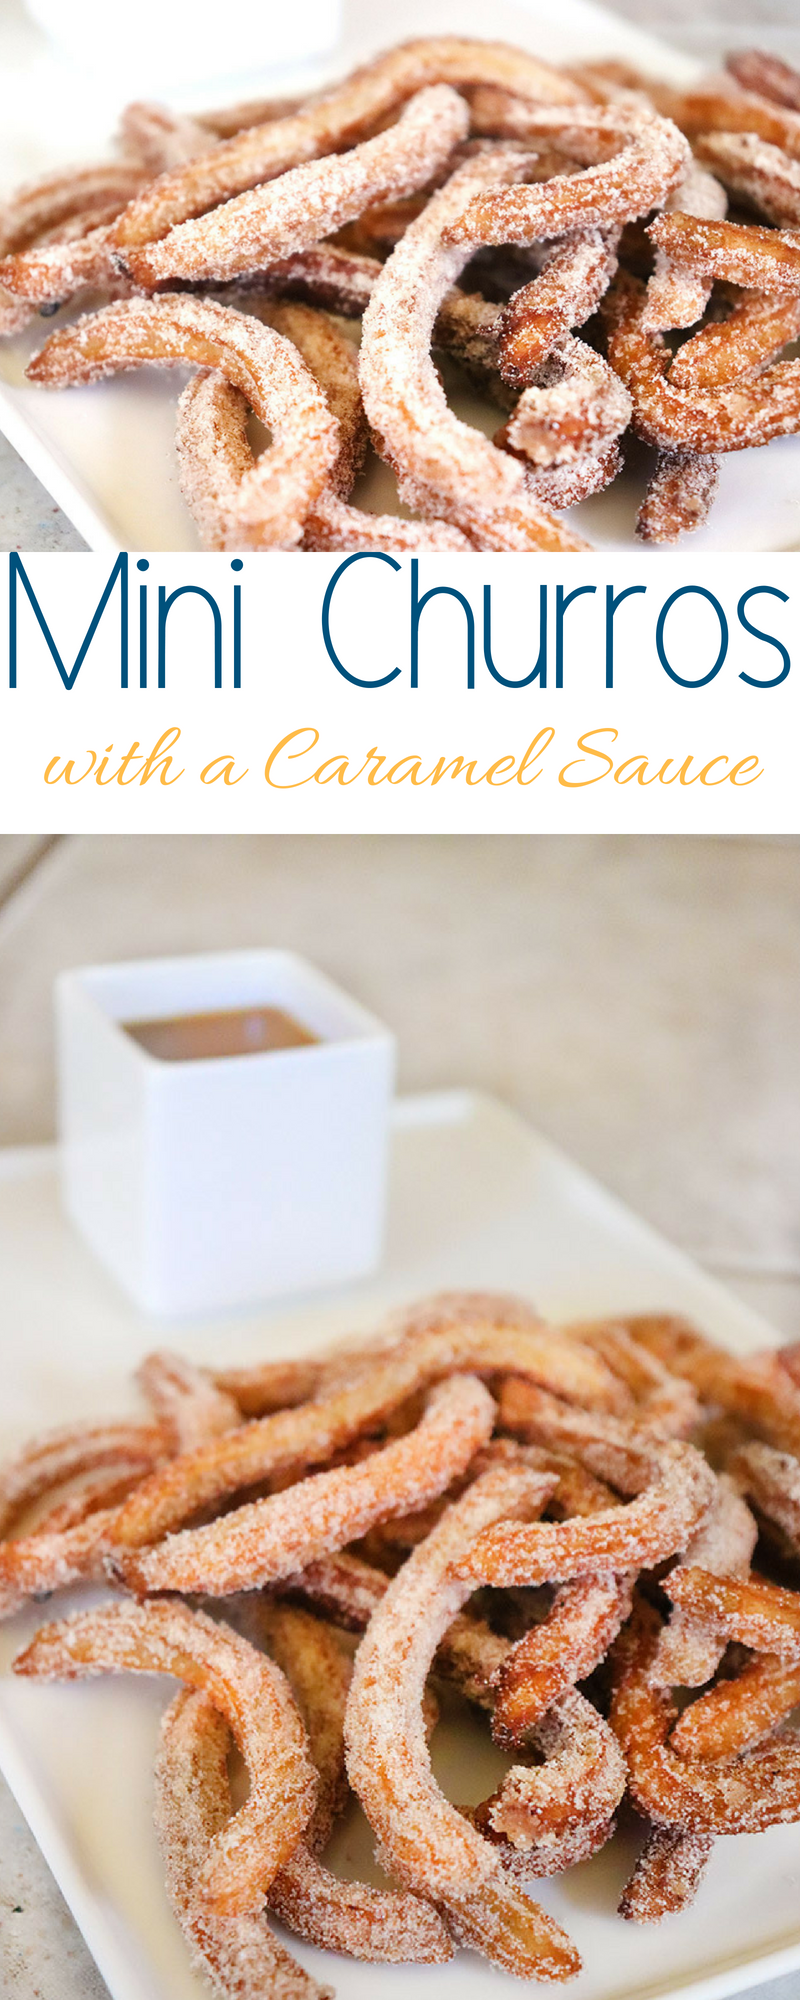 Mini Churros with Caramel Dipping Sauce 